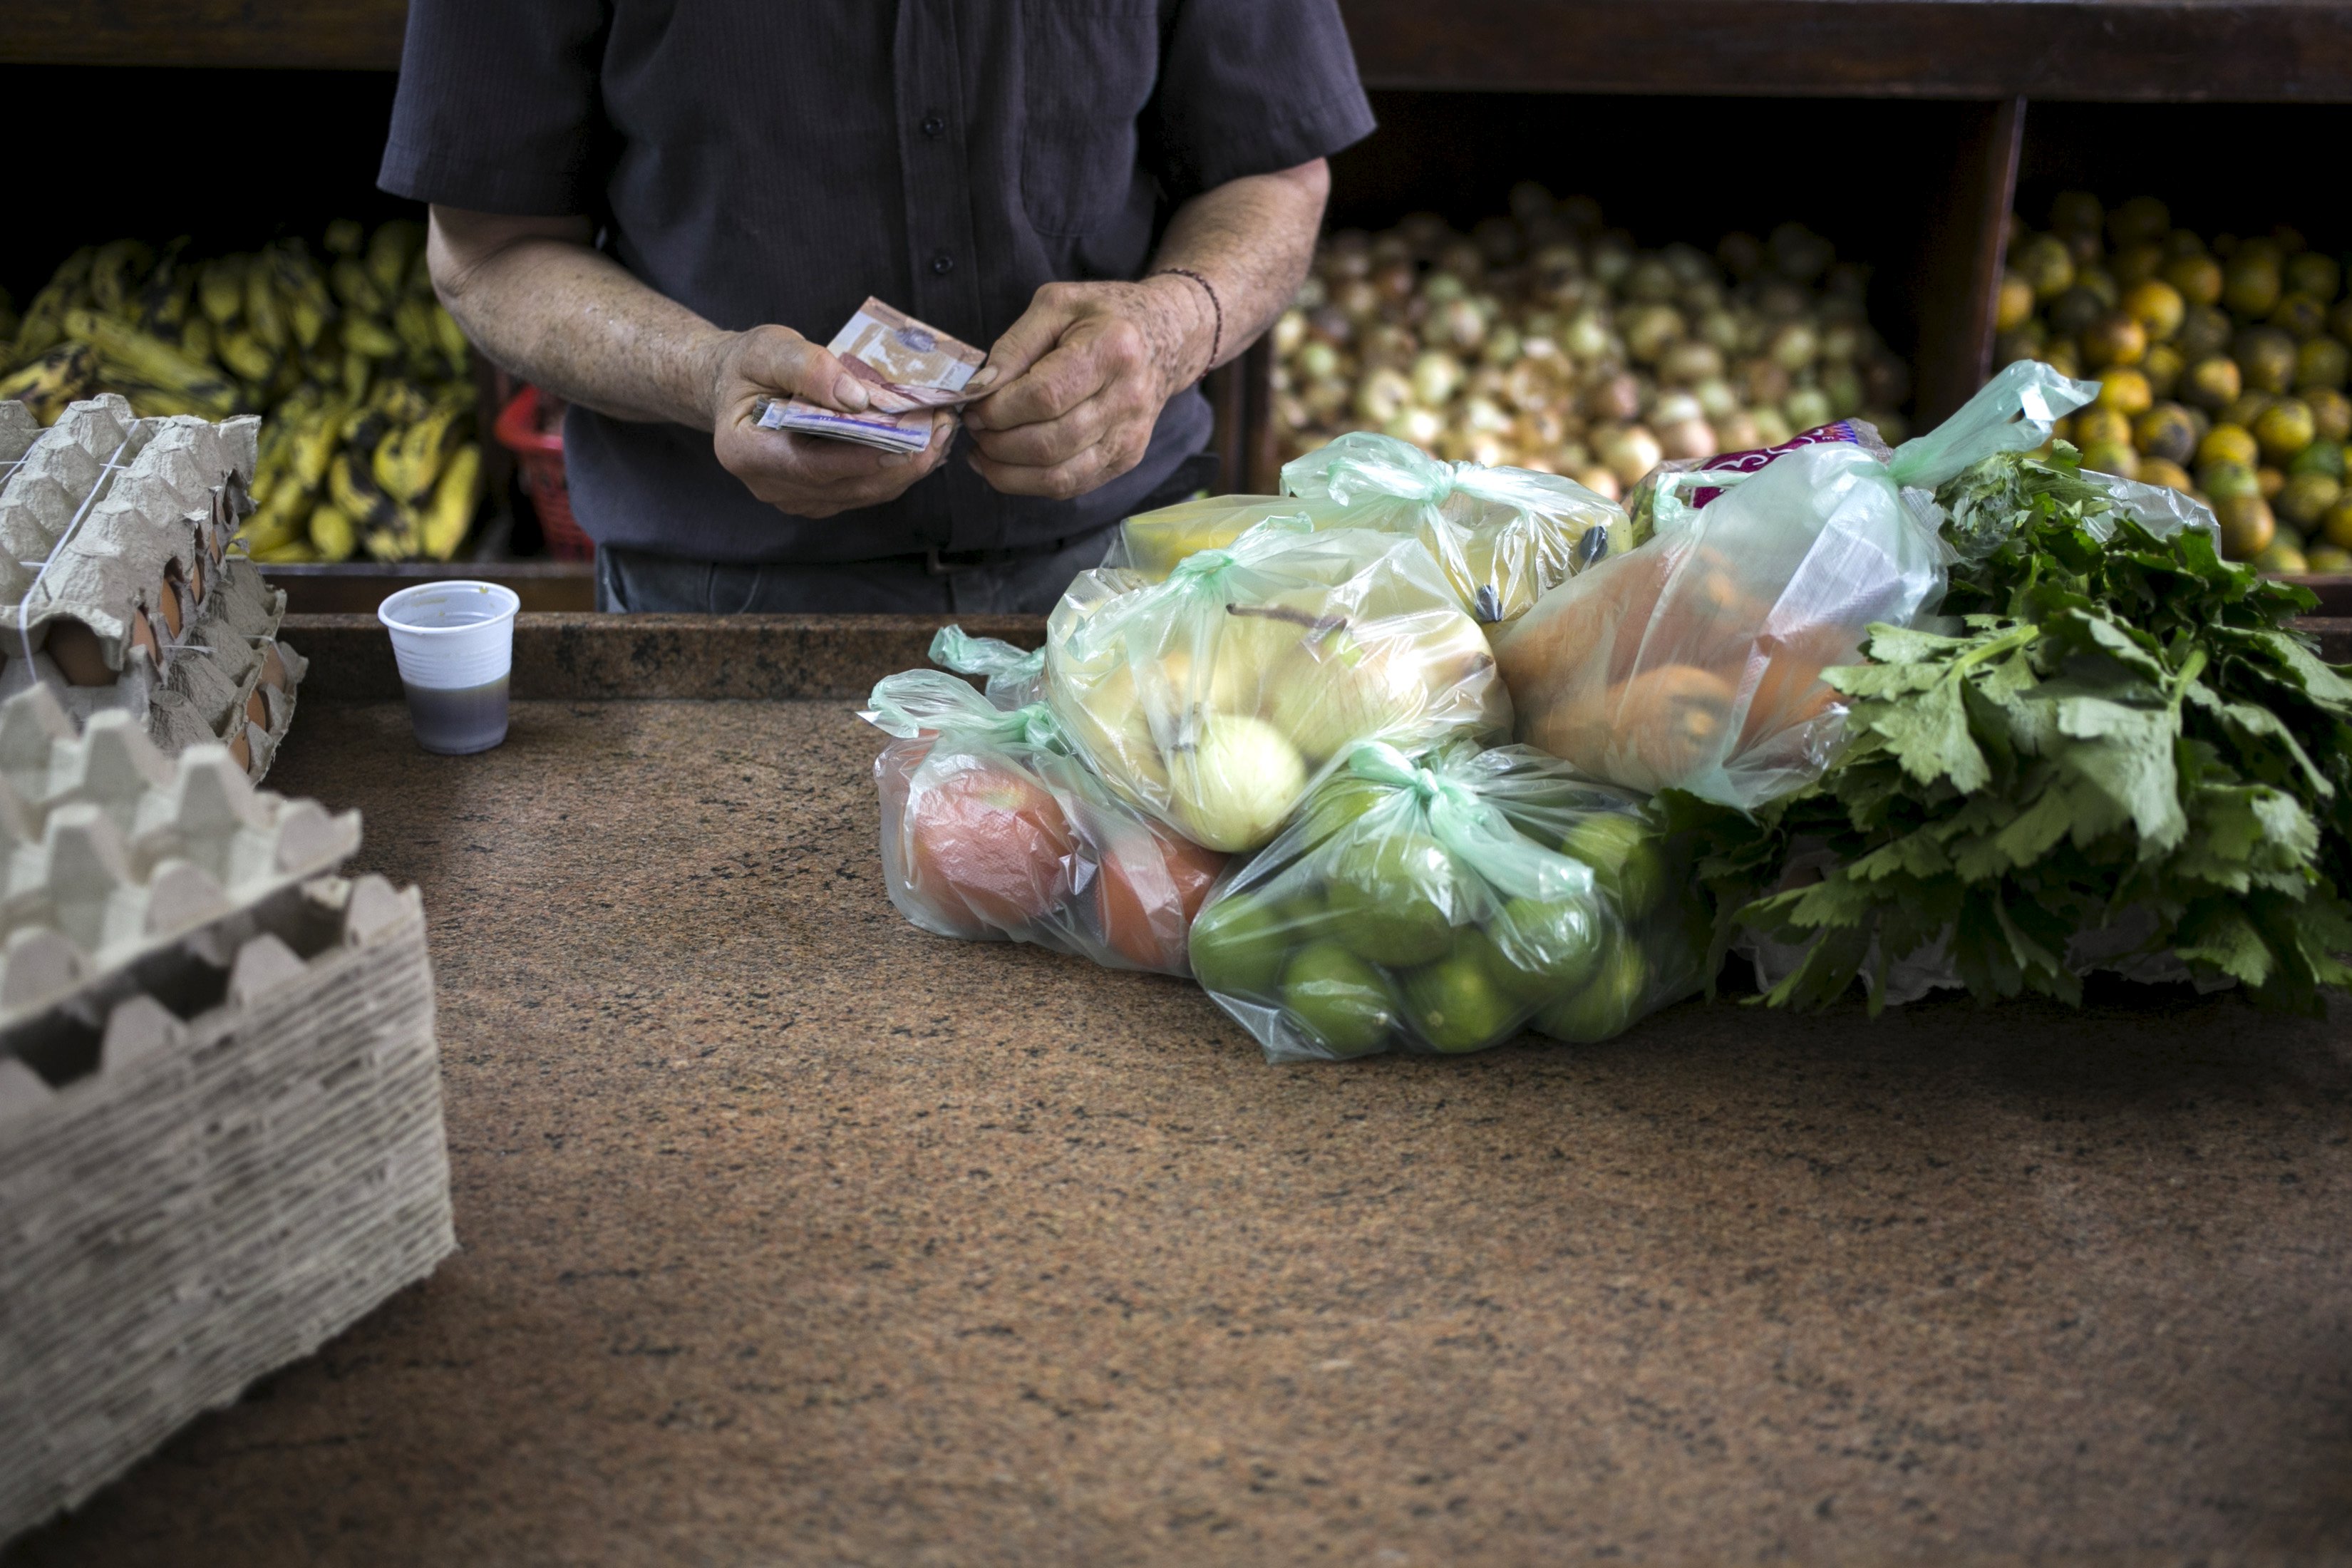 Casi ocho salarios mínimos necesita una familia venezolana para cubrir necesidades